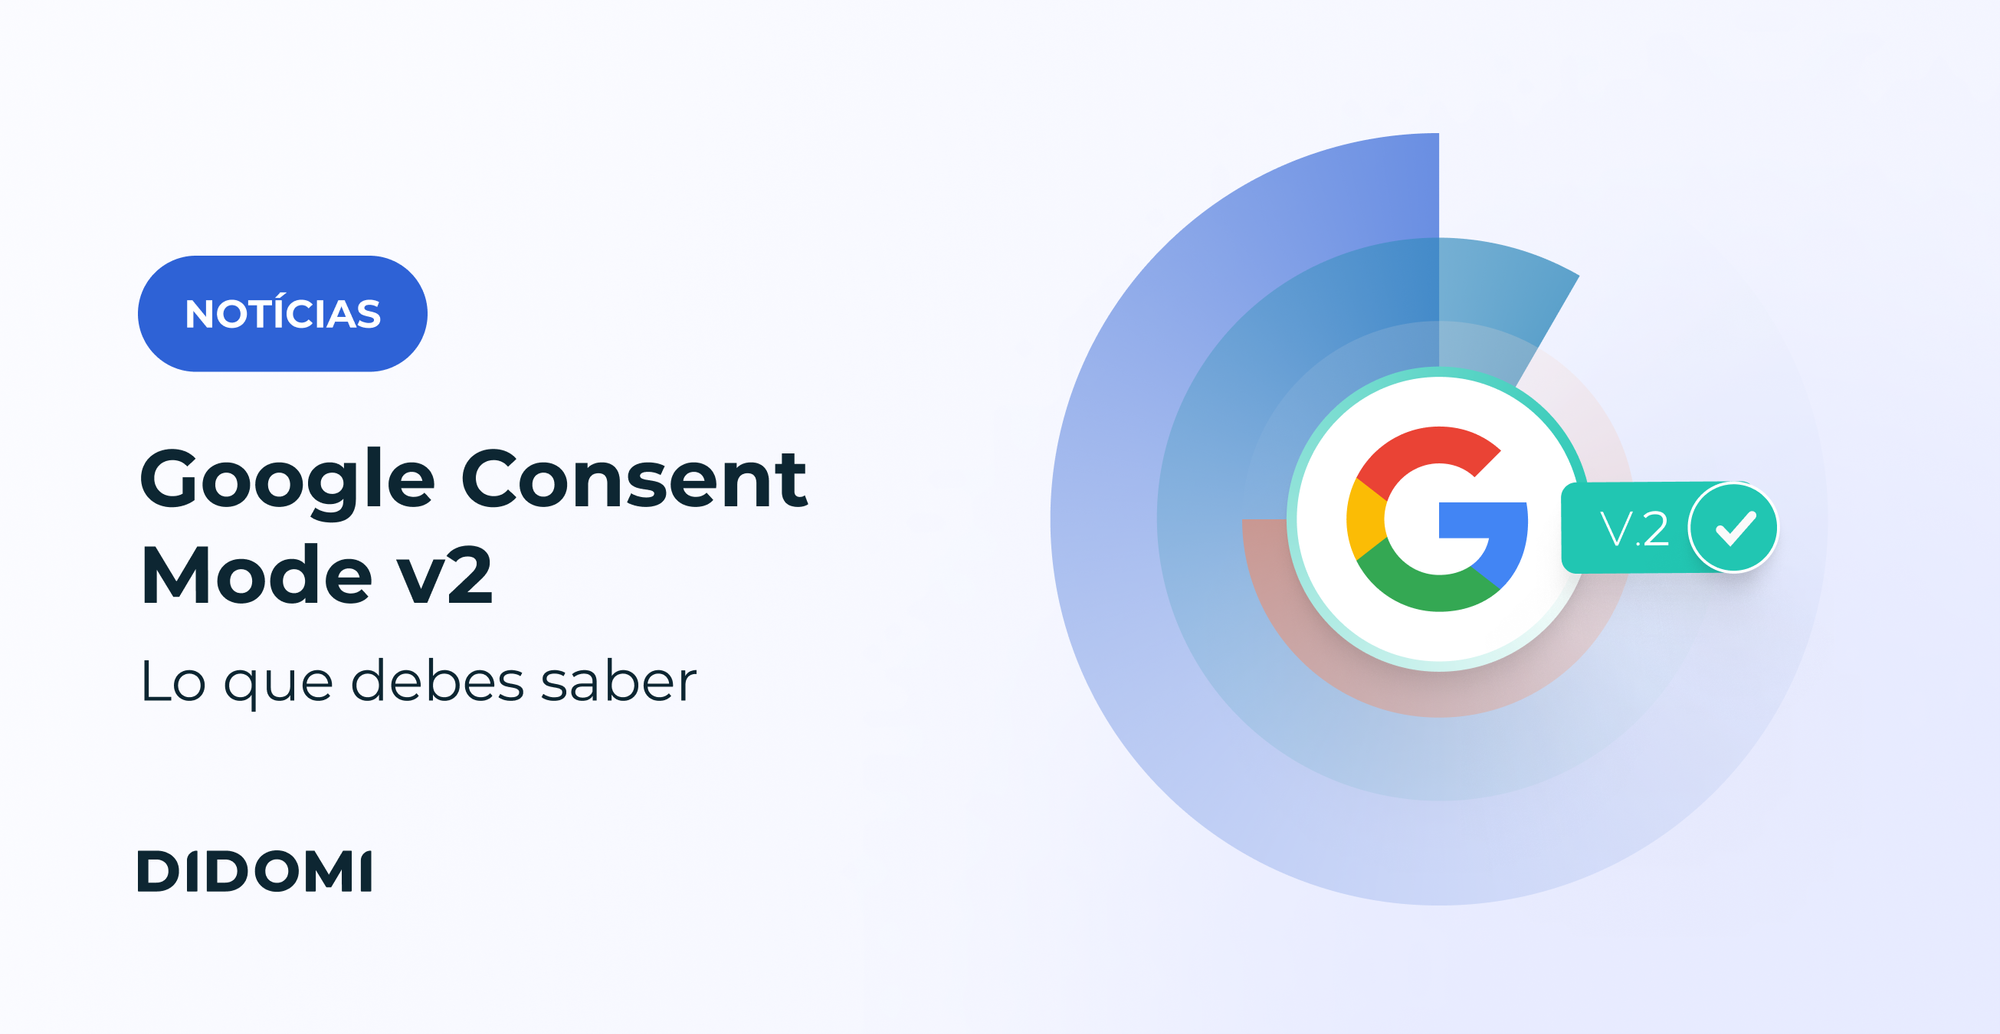 A la derecha de la imagen, el logotipo de Google acompañado de la mención "V2". A la izquierda, una insignia que dice "Noticias" con el título "Google Consent Mode V2" en negrita.